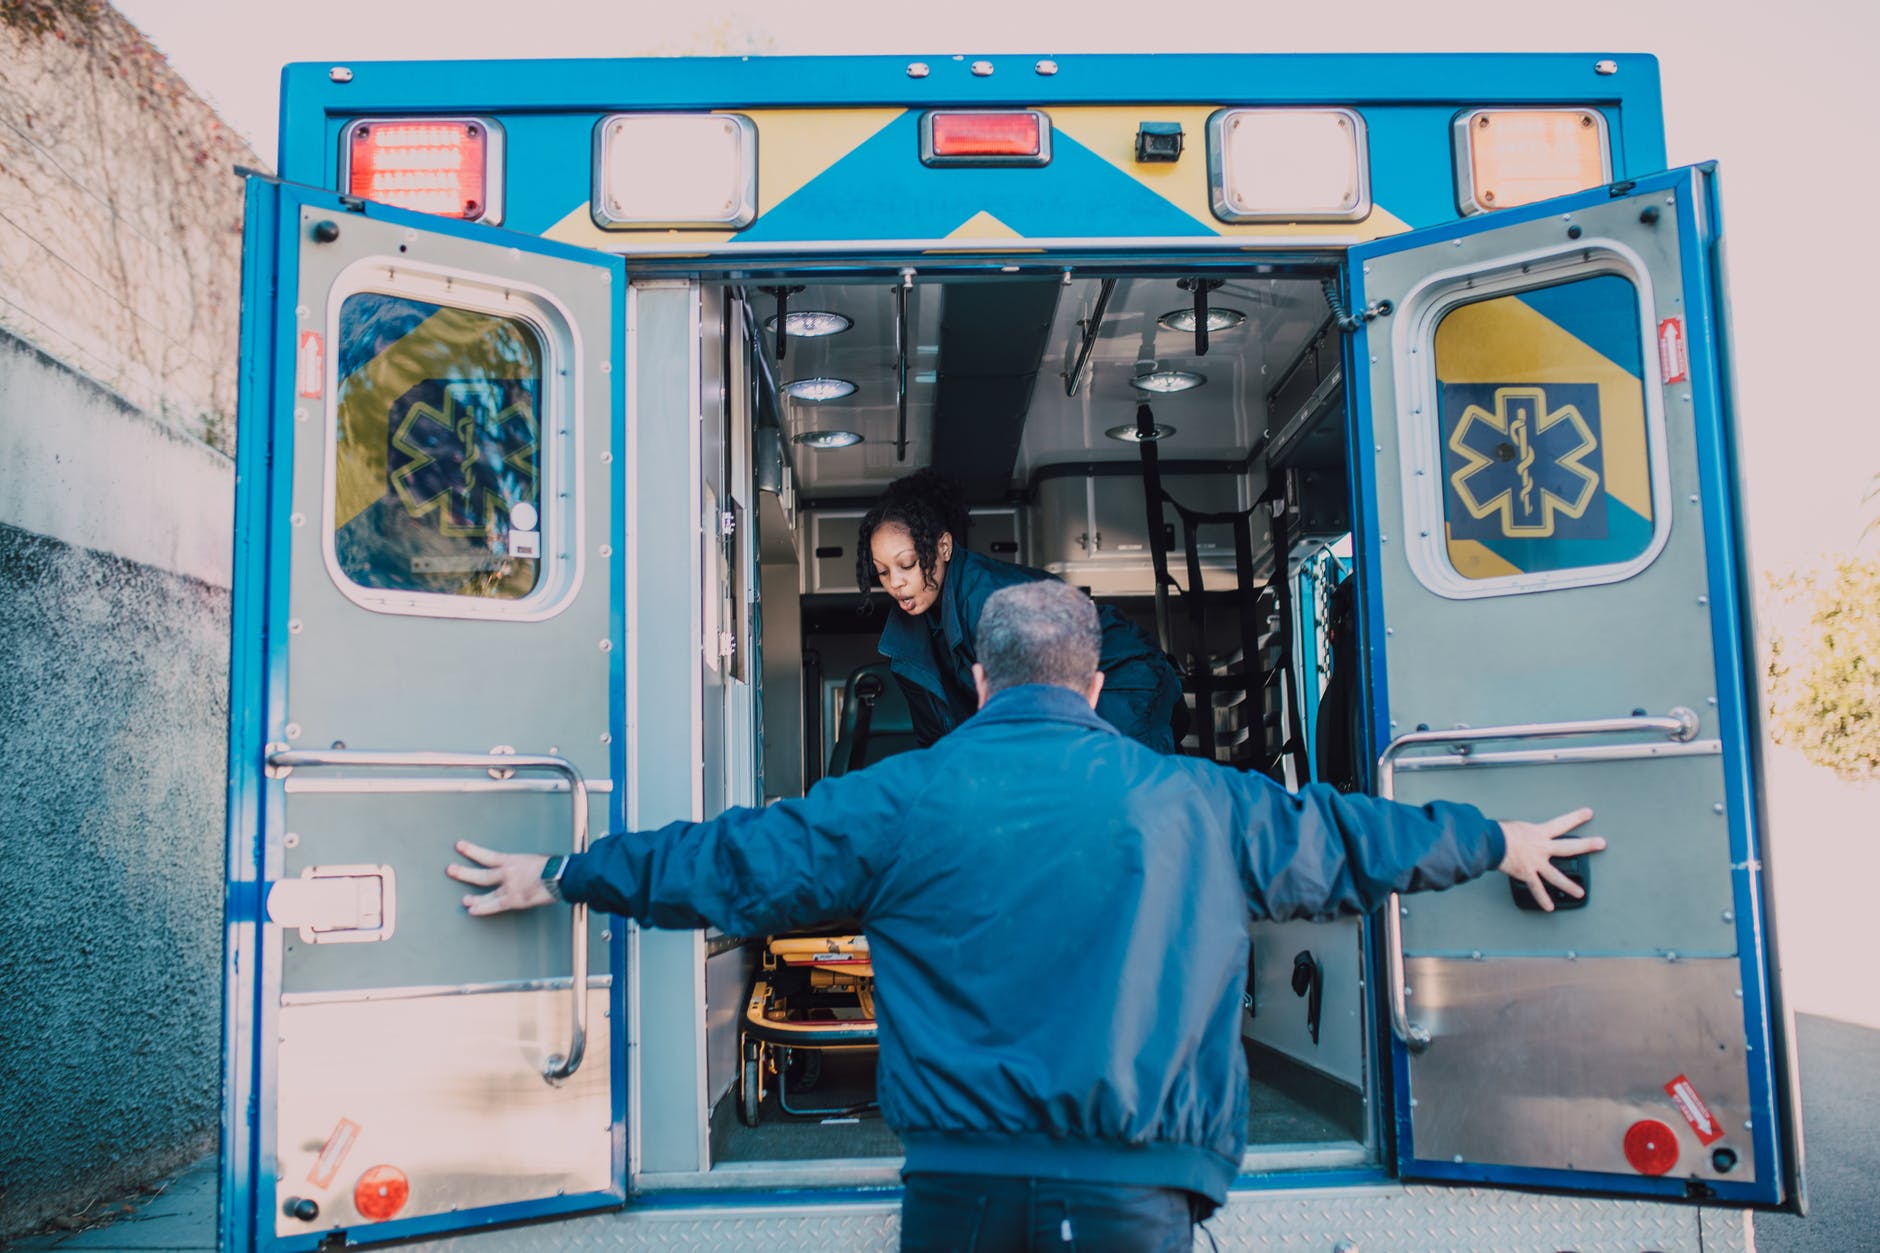 Als Karla in den Krankenwagen gebracht wurde, dankte sie Erik dafür, dass er ihr Leben gerettet hatte | Quelle: Pexels